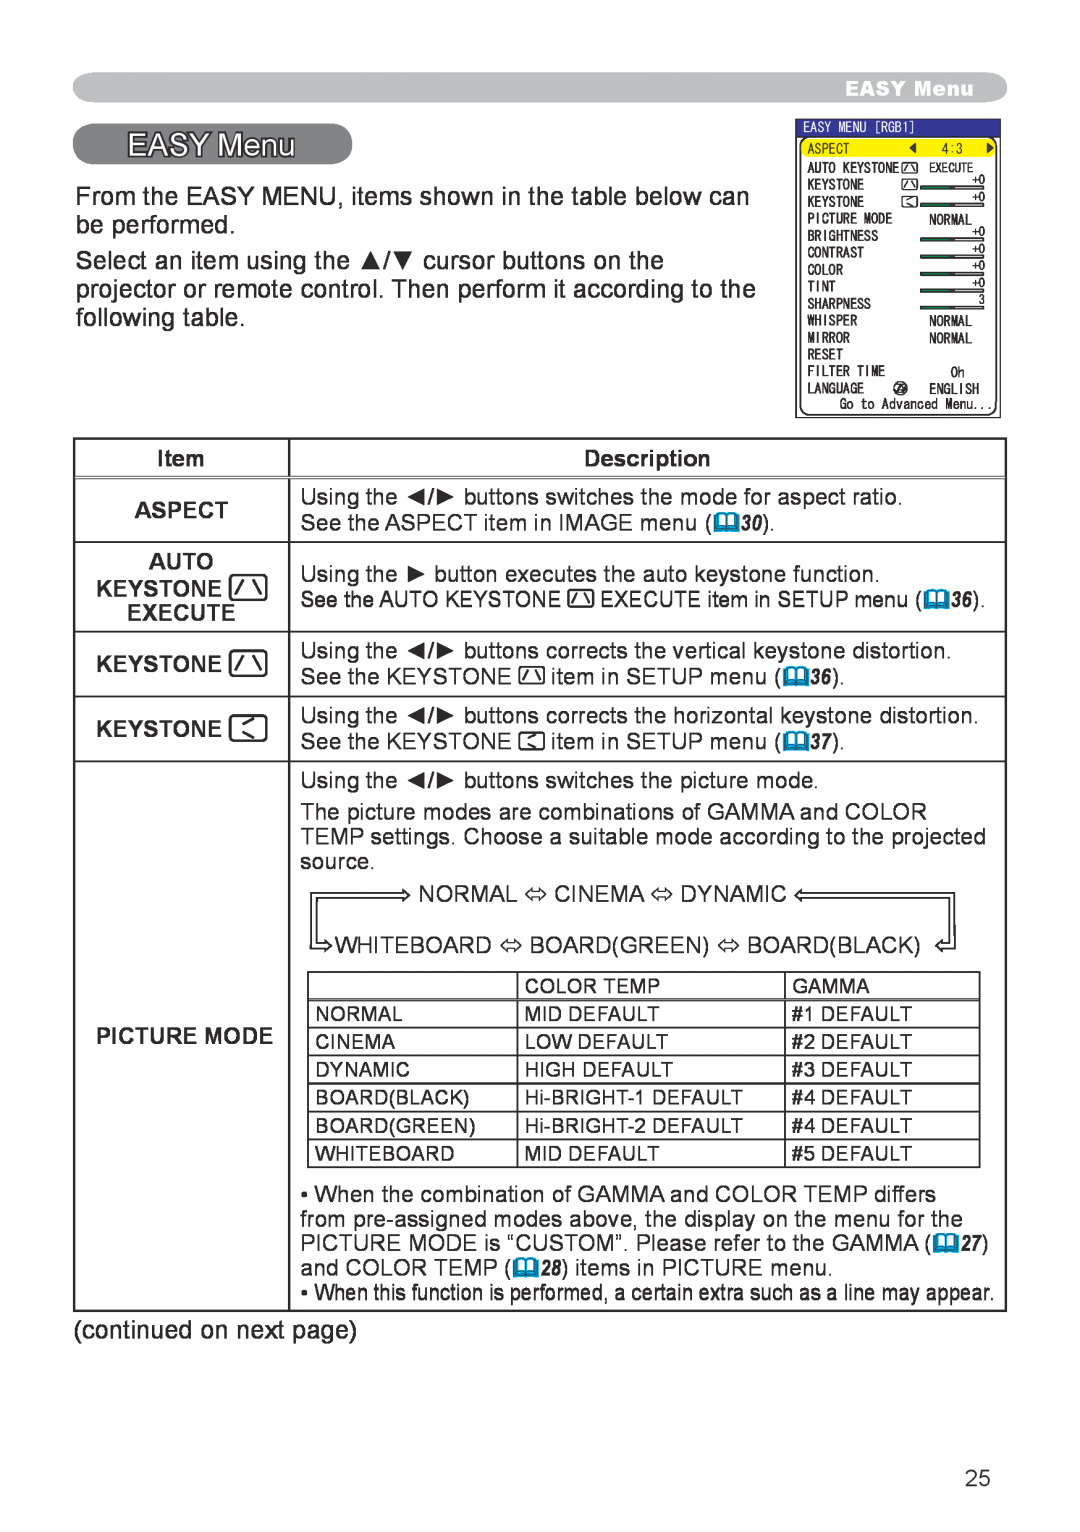 Hitachi CP-X608 user manual EASY Menu, Description, Aspect, Auto, Keystone, Execute, Picture Mode 